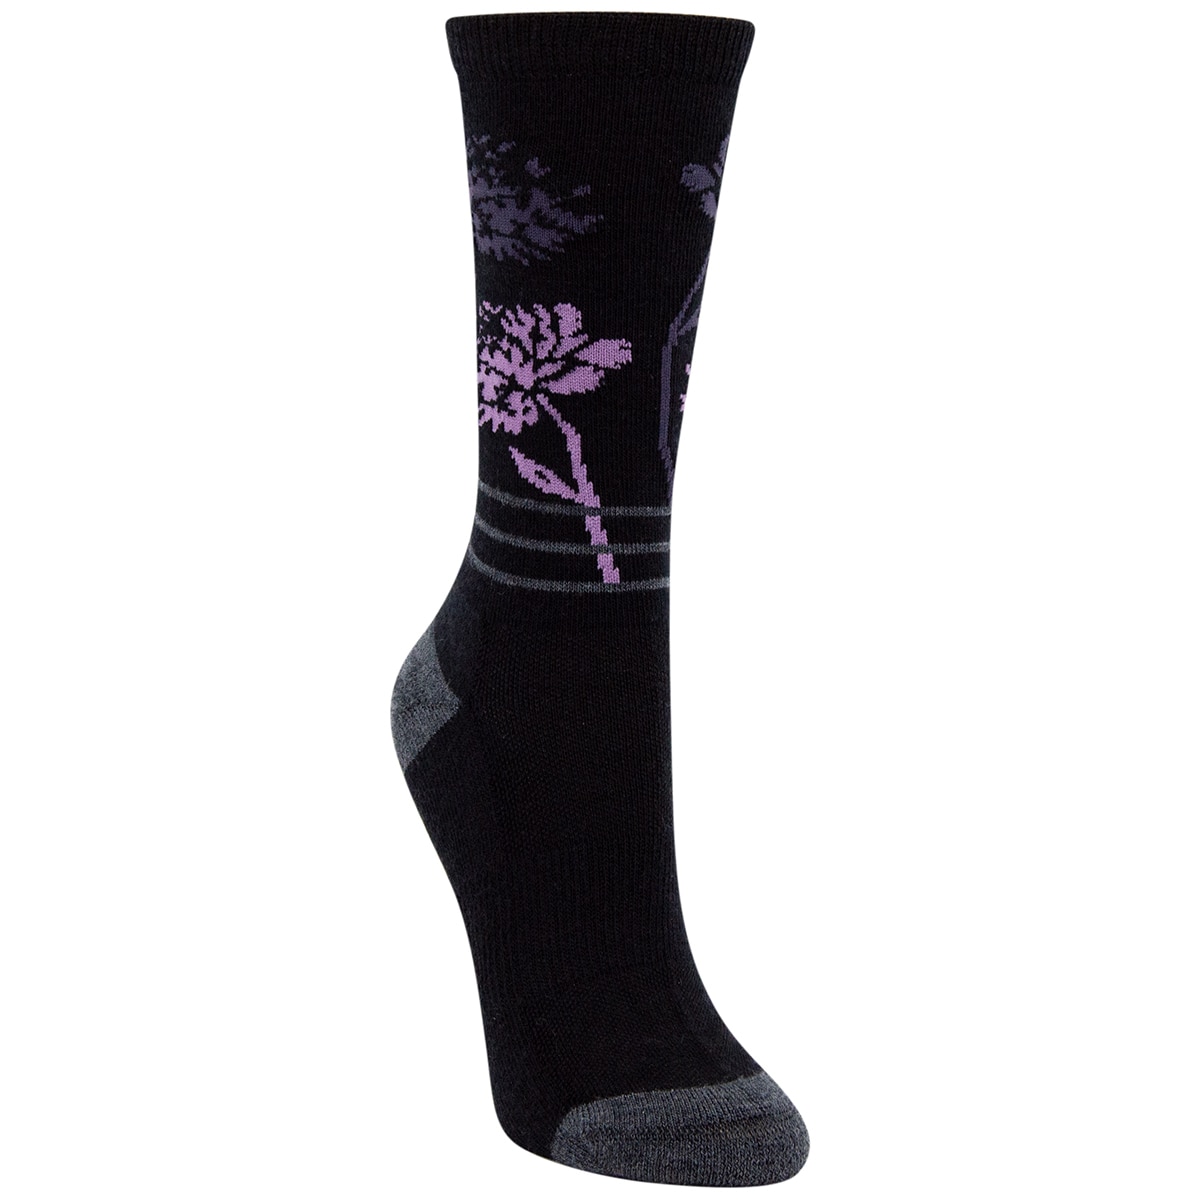 Kirkland Signature Trail Sock - Black/Purple